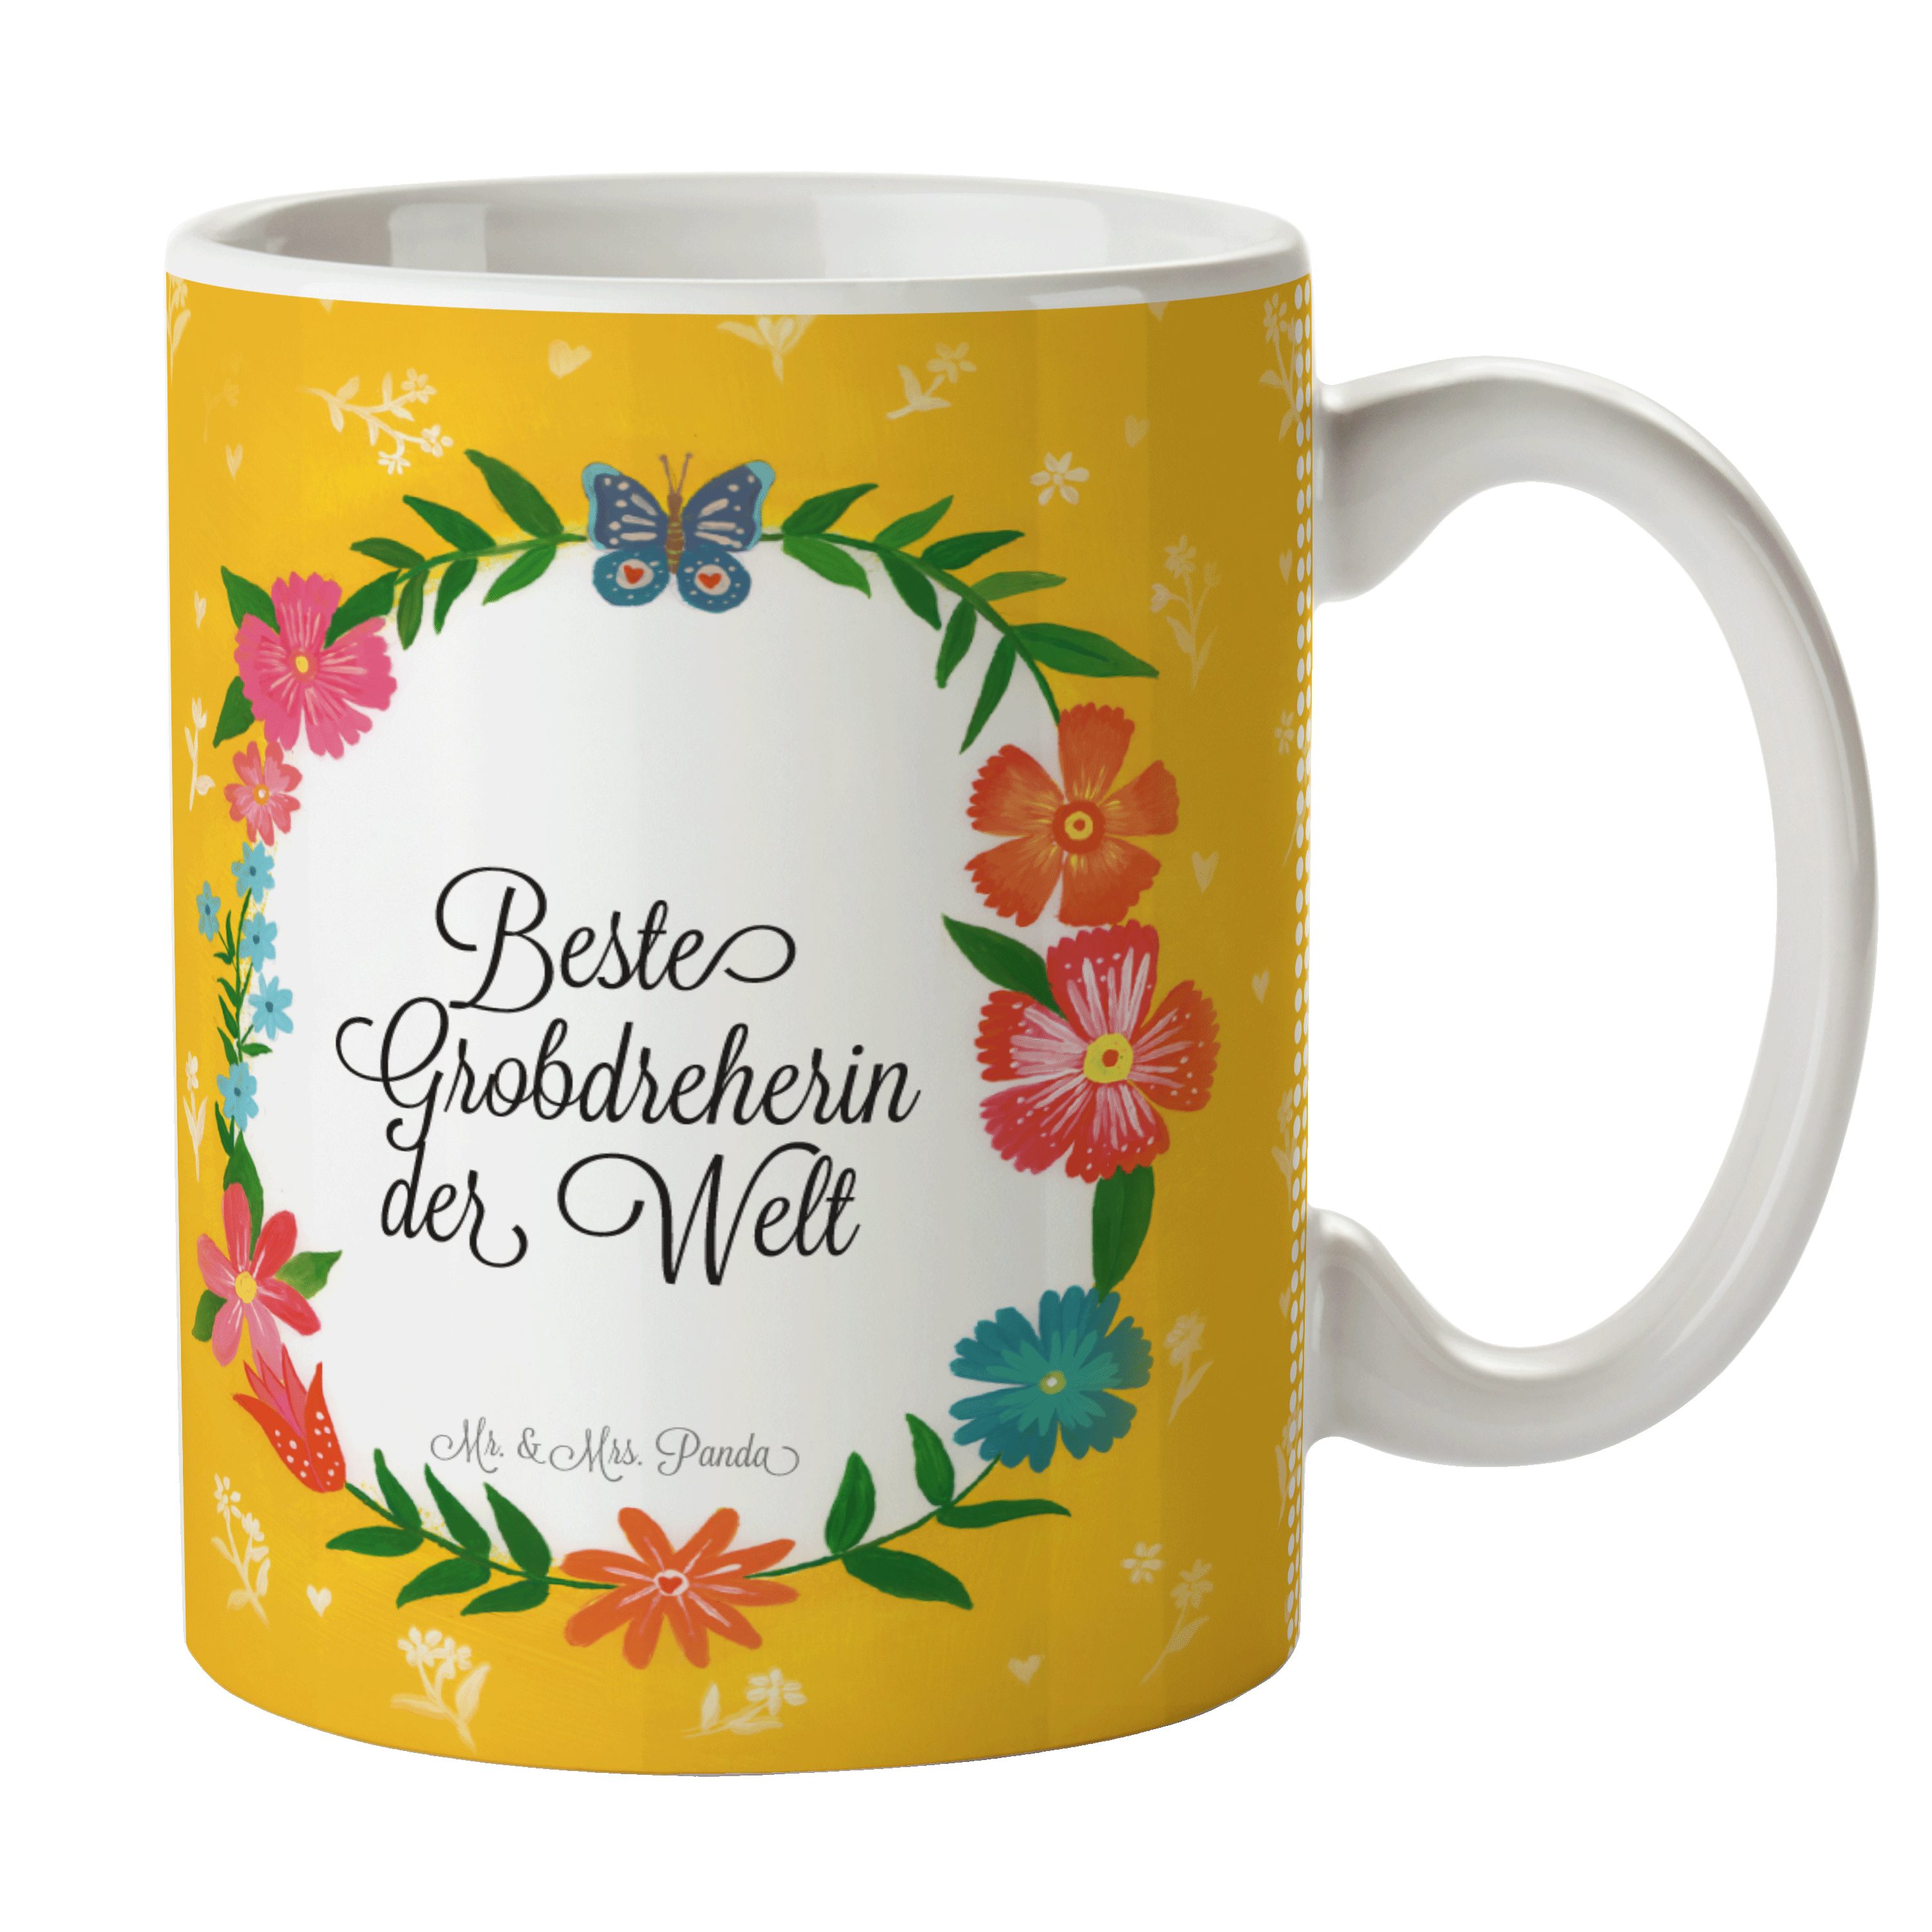 Mr. & Mrs. Kaffeebecher, Motive, - Grobdreherin Schenken, Tasse Tasse Ausbil, Panda Keramik Geschenk